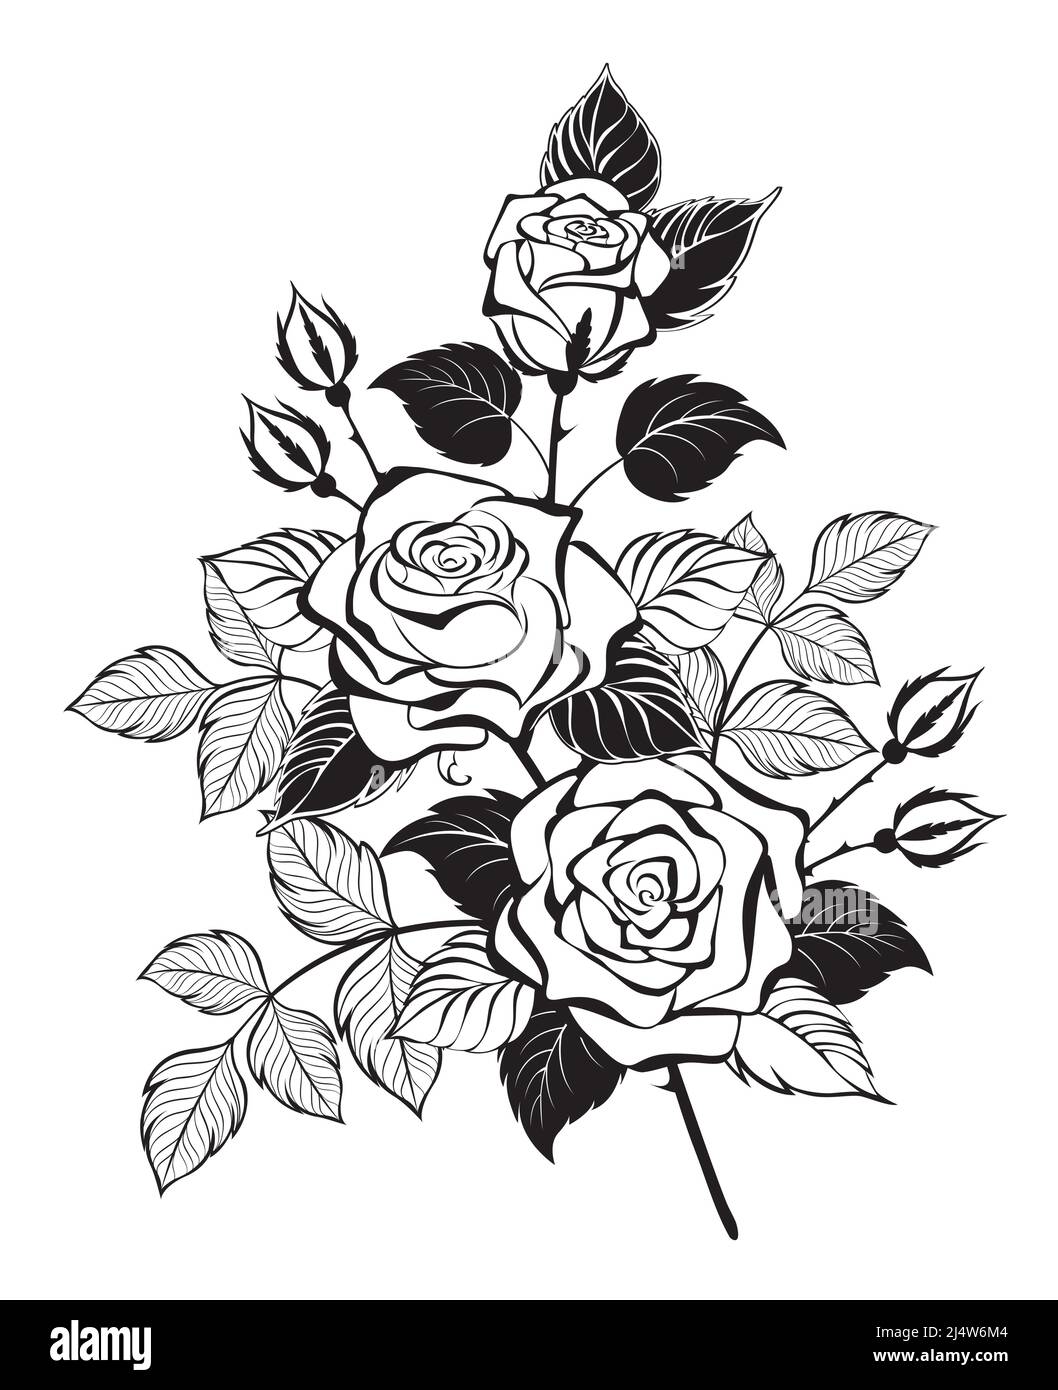 Disegnata artisticamente, disegno a contorno, rami di rosa con tre boccioli in fiore e foglie con sagome. Stile tatuaggio. Illustrazione Vettoriale